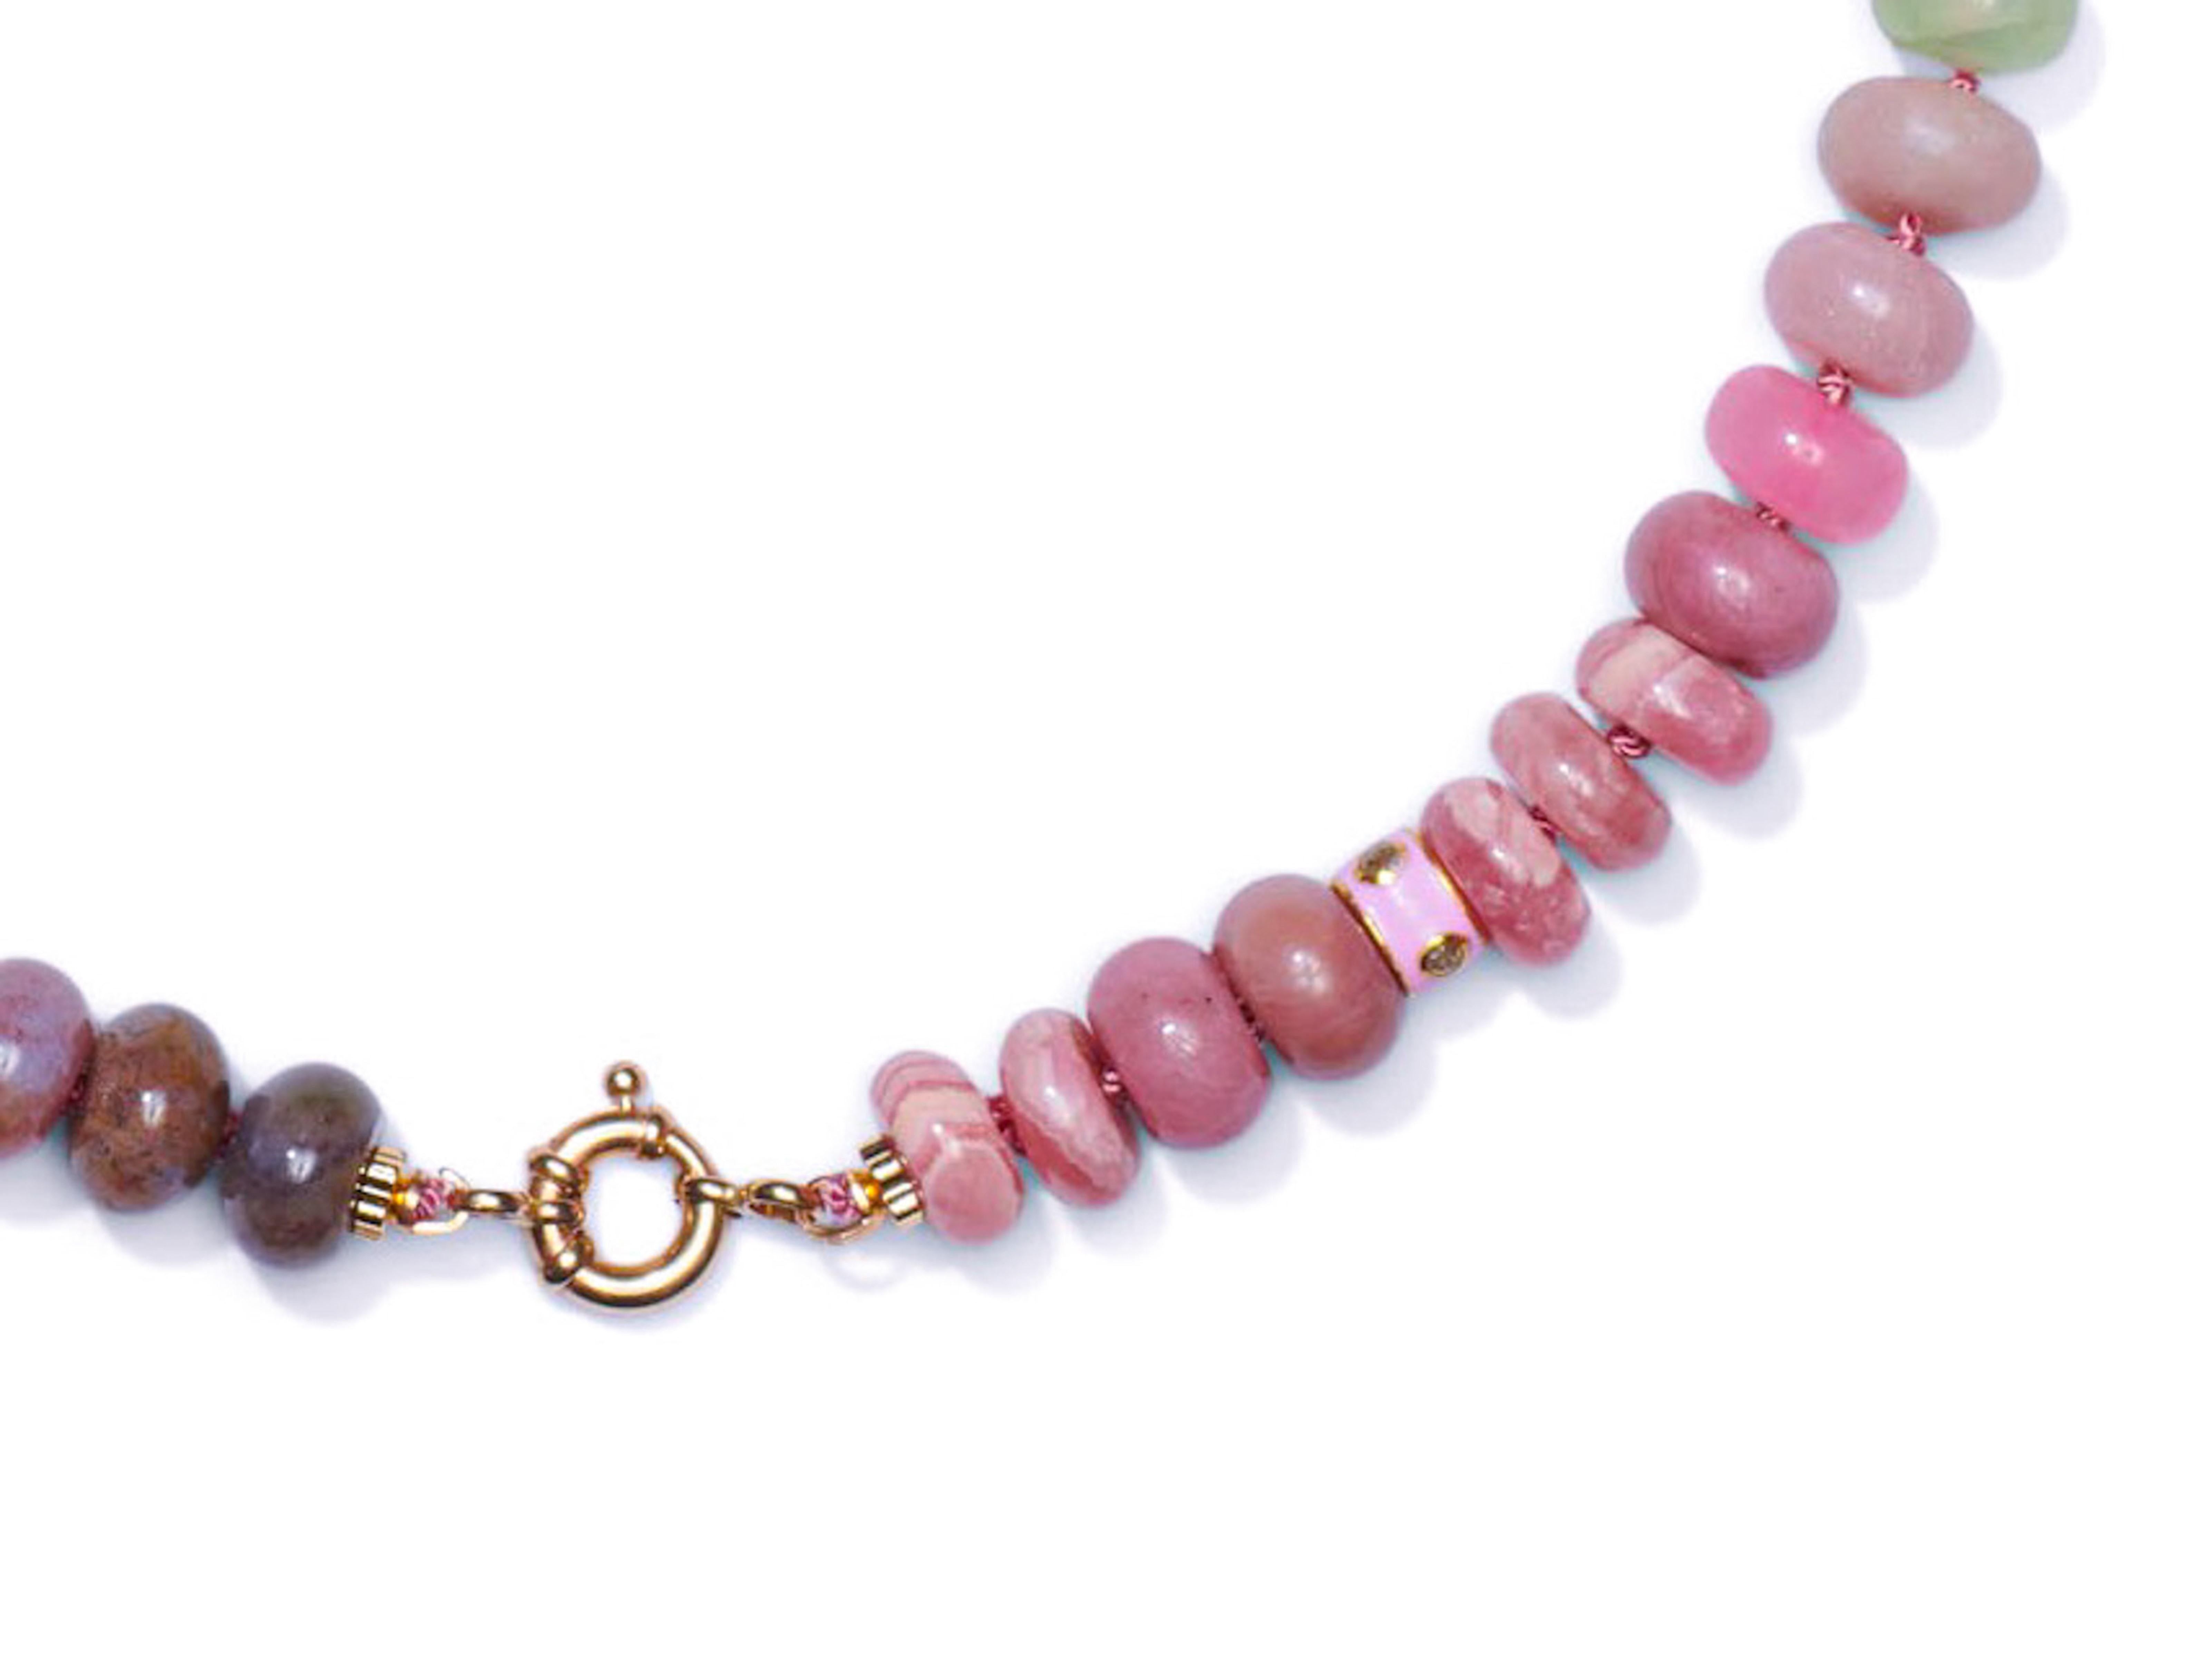 Exquisite Edelstein-Perlenkette mit einer Vielzahl von Edelsteinen wie z. B.:

- • Äthiopischer Opal
- • Peridot
- • Spitzenachat
- • Aventurin
- • Kunzit
- • Rosa Opal
- • Erdbeerquarz
- • Rosenquarz
- • Aventurine
- • Argentinischer Rhodochrosit
-